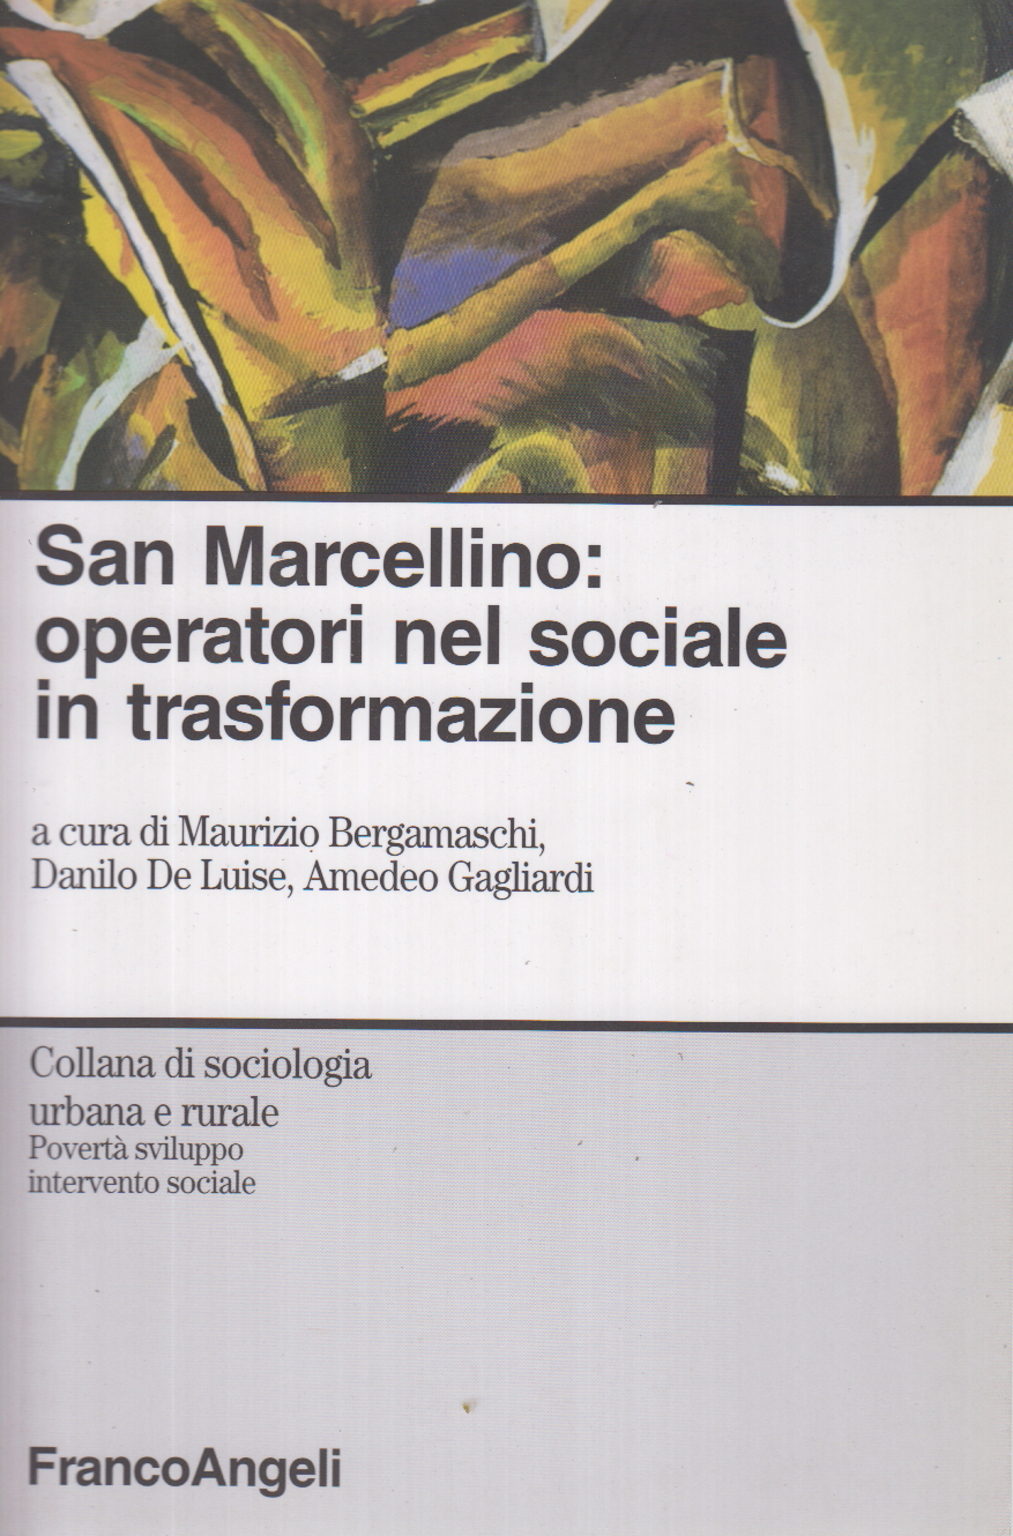 Saint-Marcellin: les opérateurs dans le domaine social, dans les virages, Maurizio Bergamaschi Danilo De Luise Amedeo Gagliardi